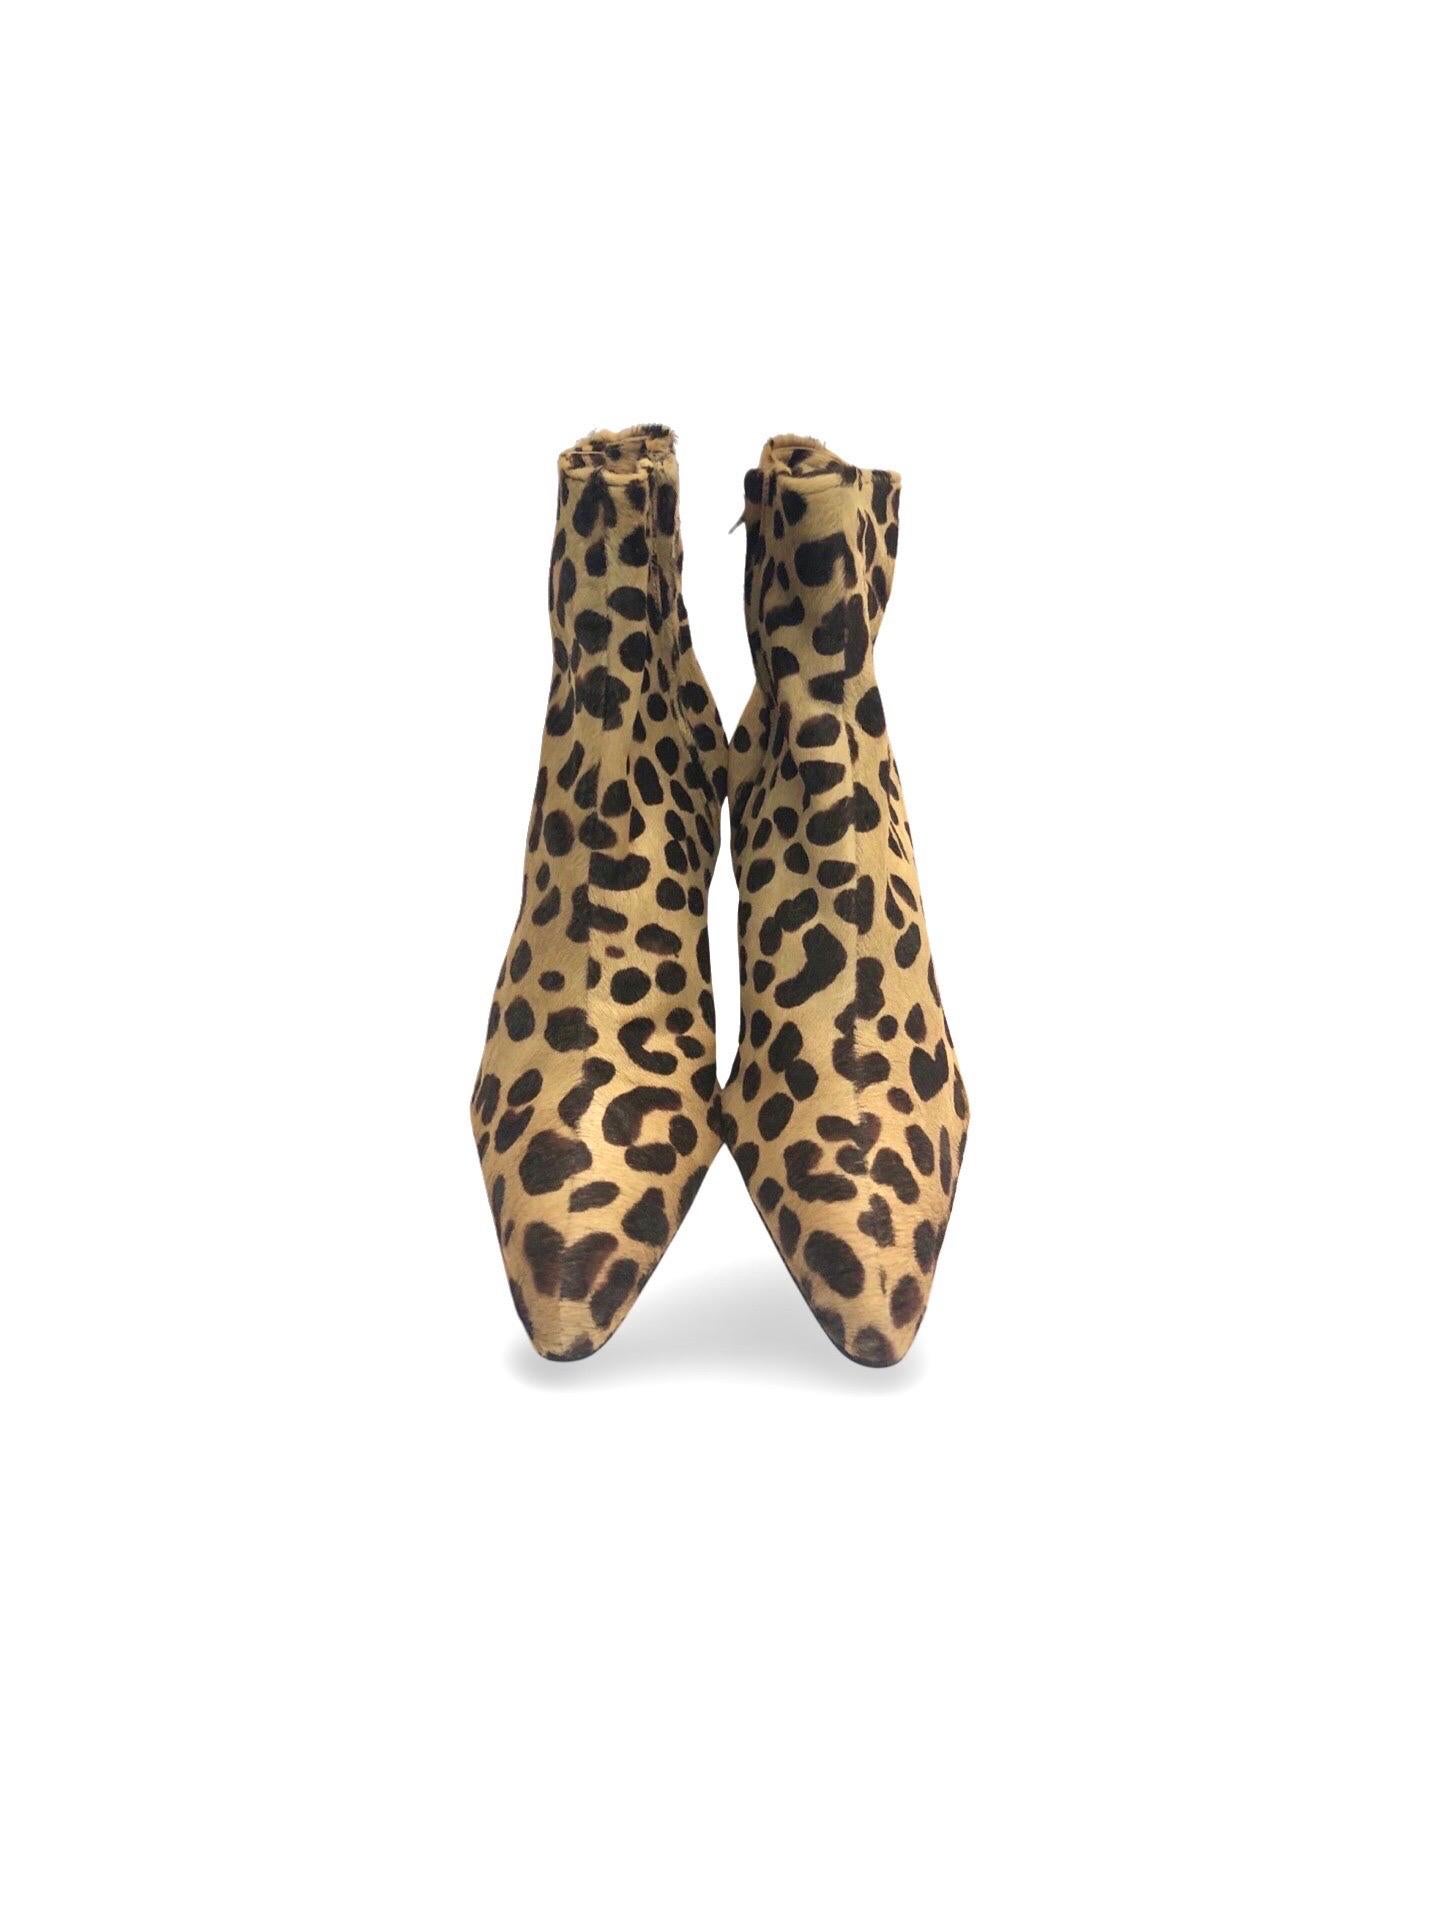 Christian Dior by John Galliano Stiefelette aus Pferdehaar mit Leopardenmuster. 

- Reißverschluss. 

- Diese Stiefel sind noch nie getragen worden. Es ist Größe 38. 



